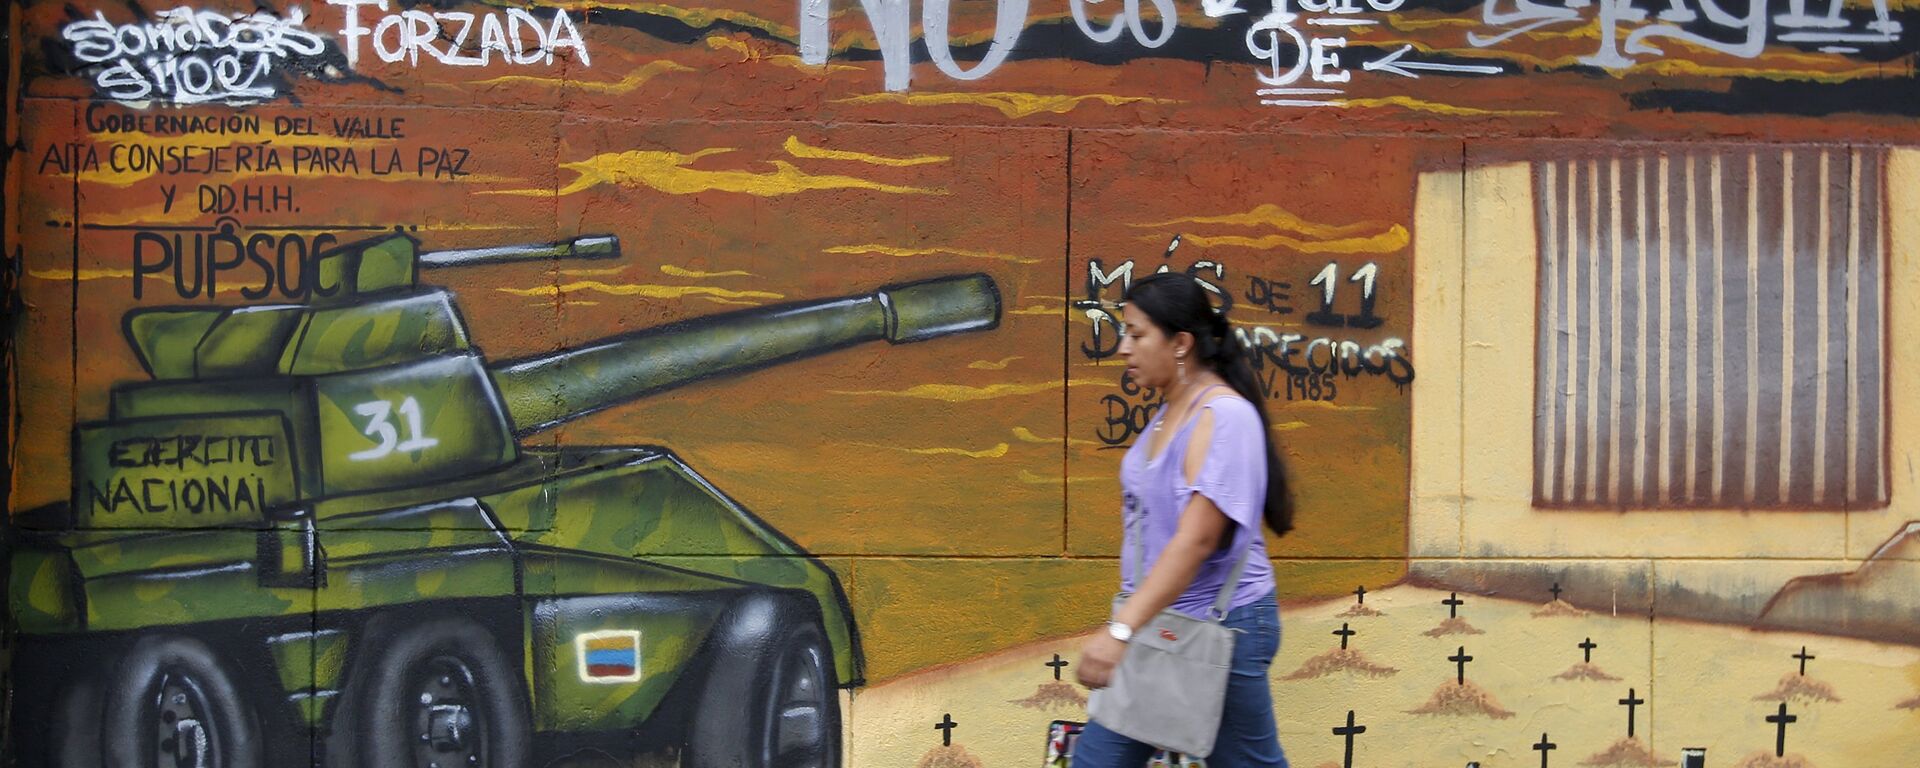 Un grafiti en Colombia sobre conflicto armado (imagen referencial) - Sputnik Mundo, 1920, 21.12.2021